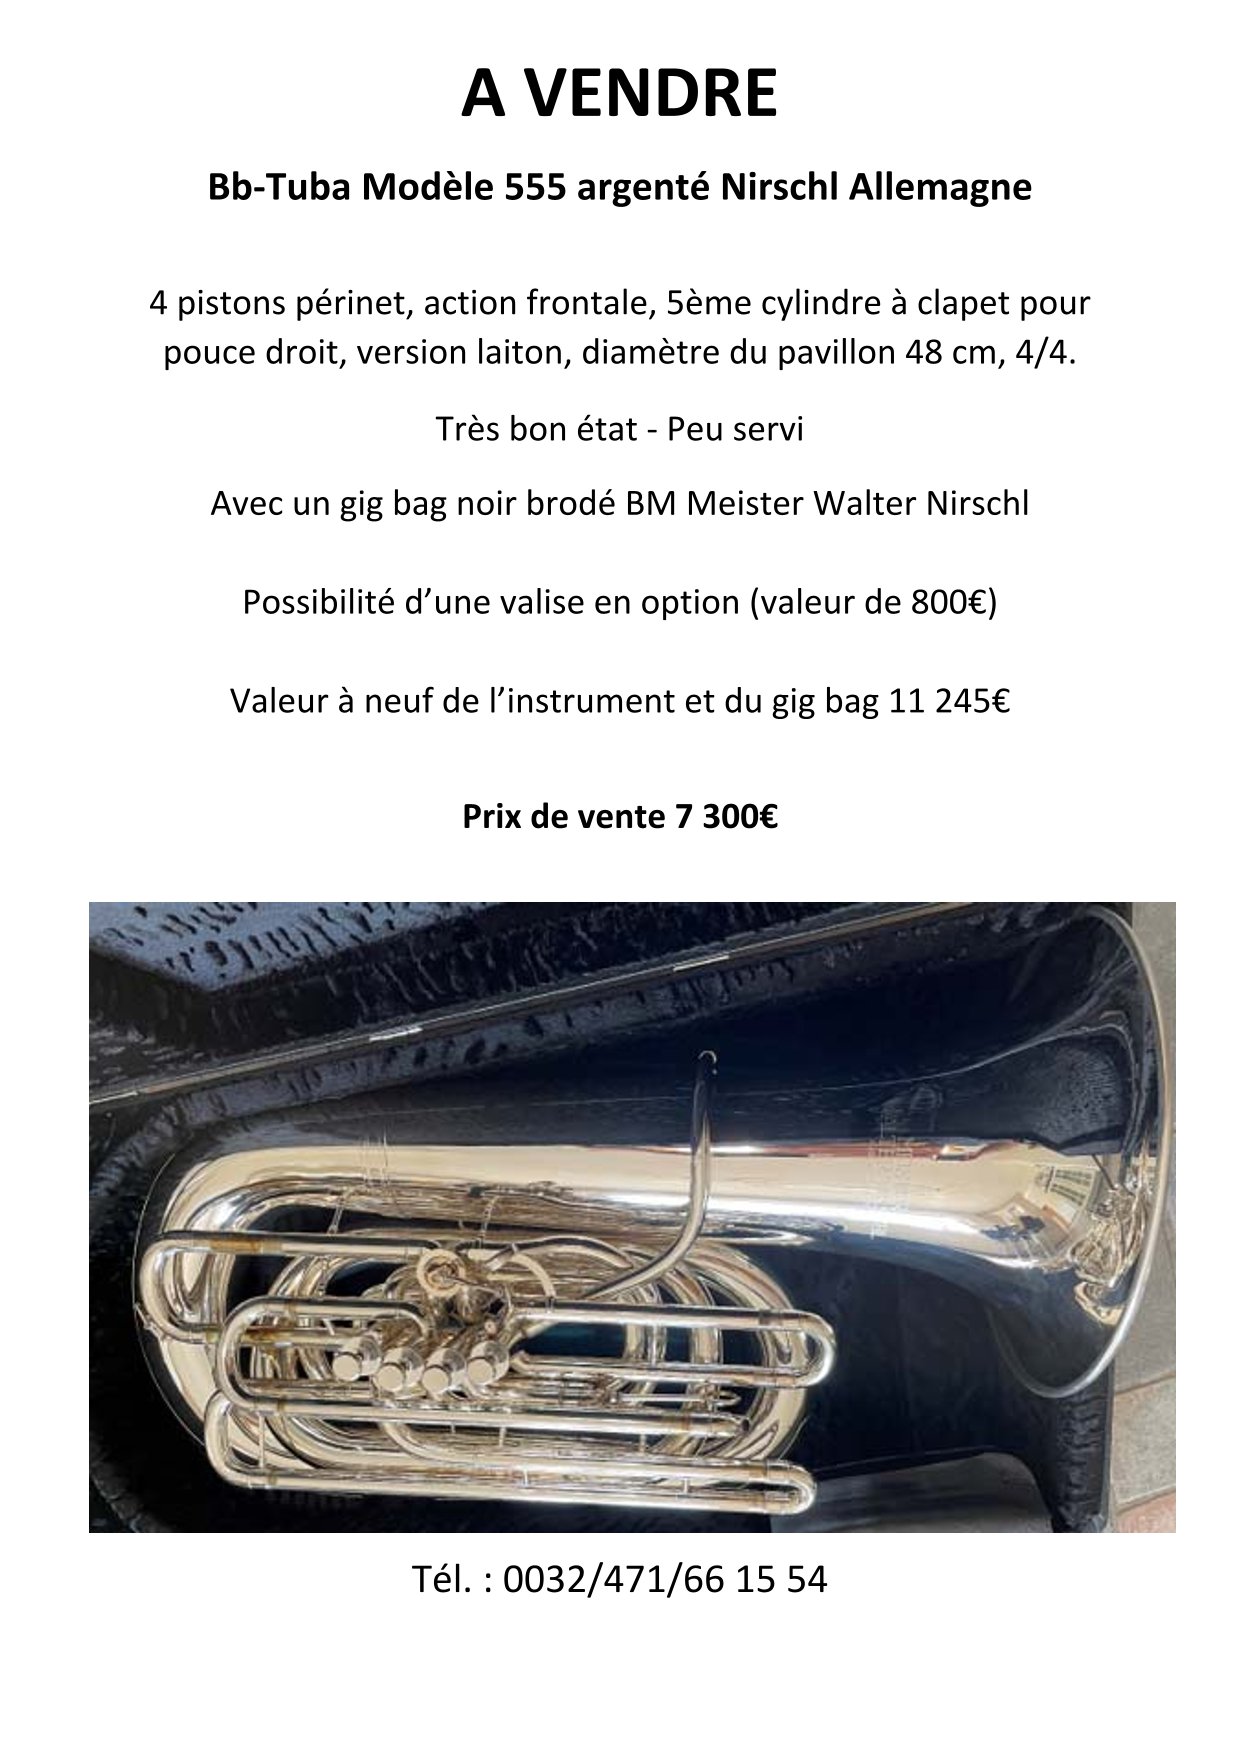 A VENDRE Tuba Nirschl 5559 1